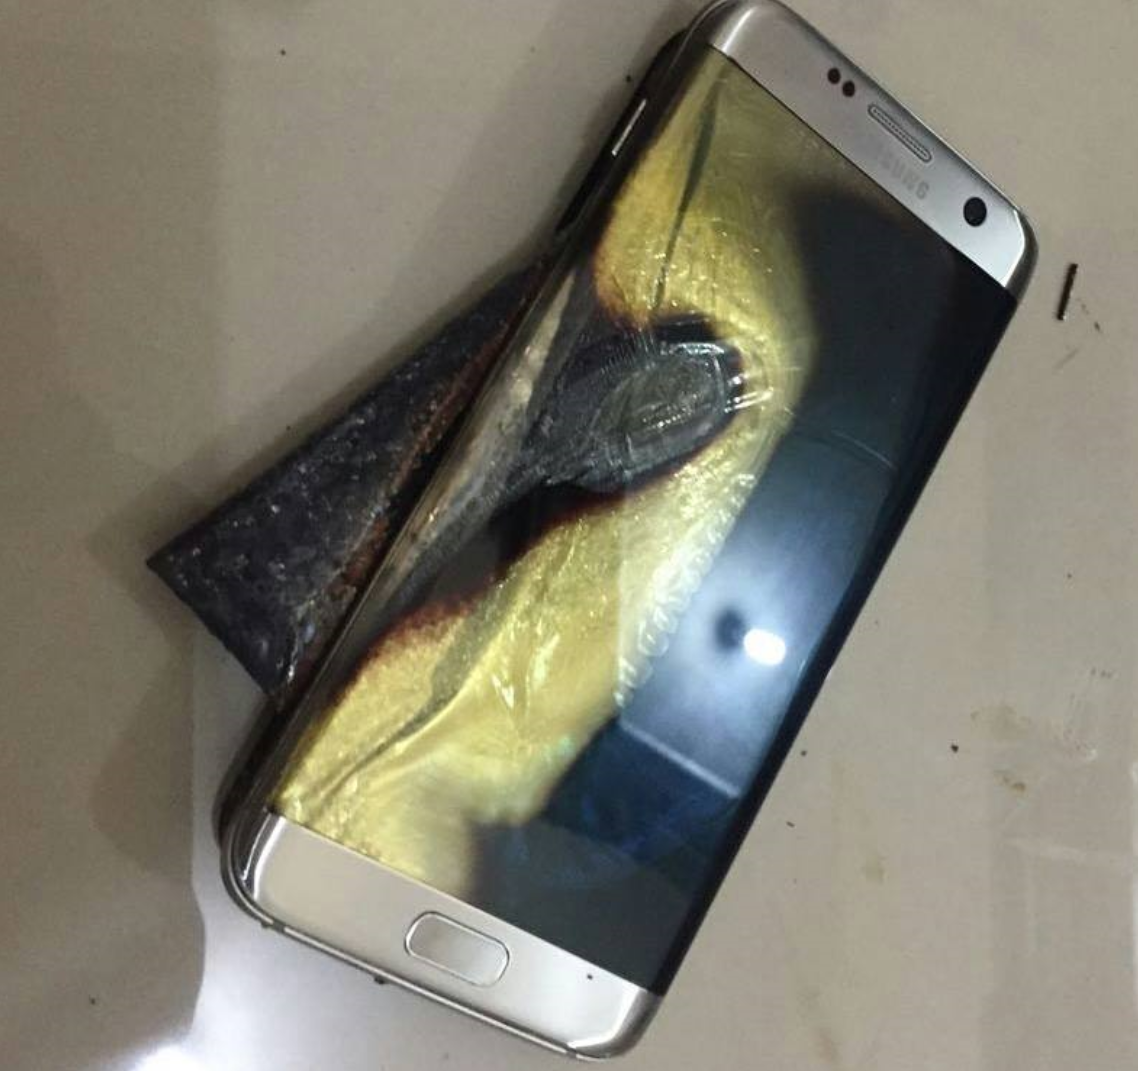 Galaxy S7 explodeert tijdens het opladen